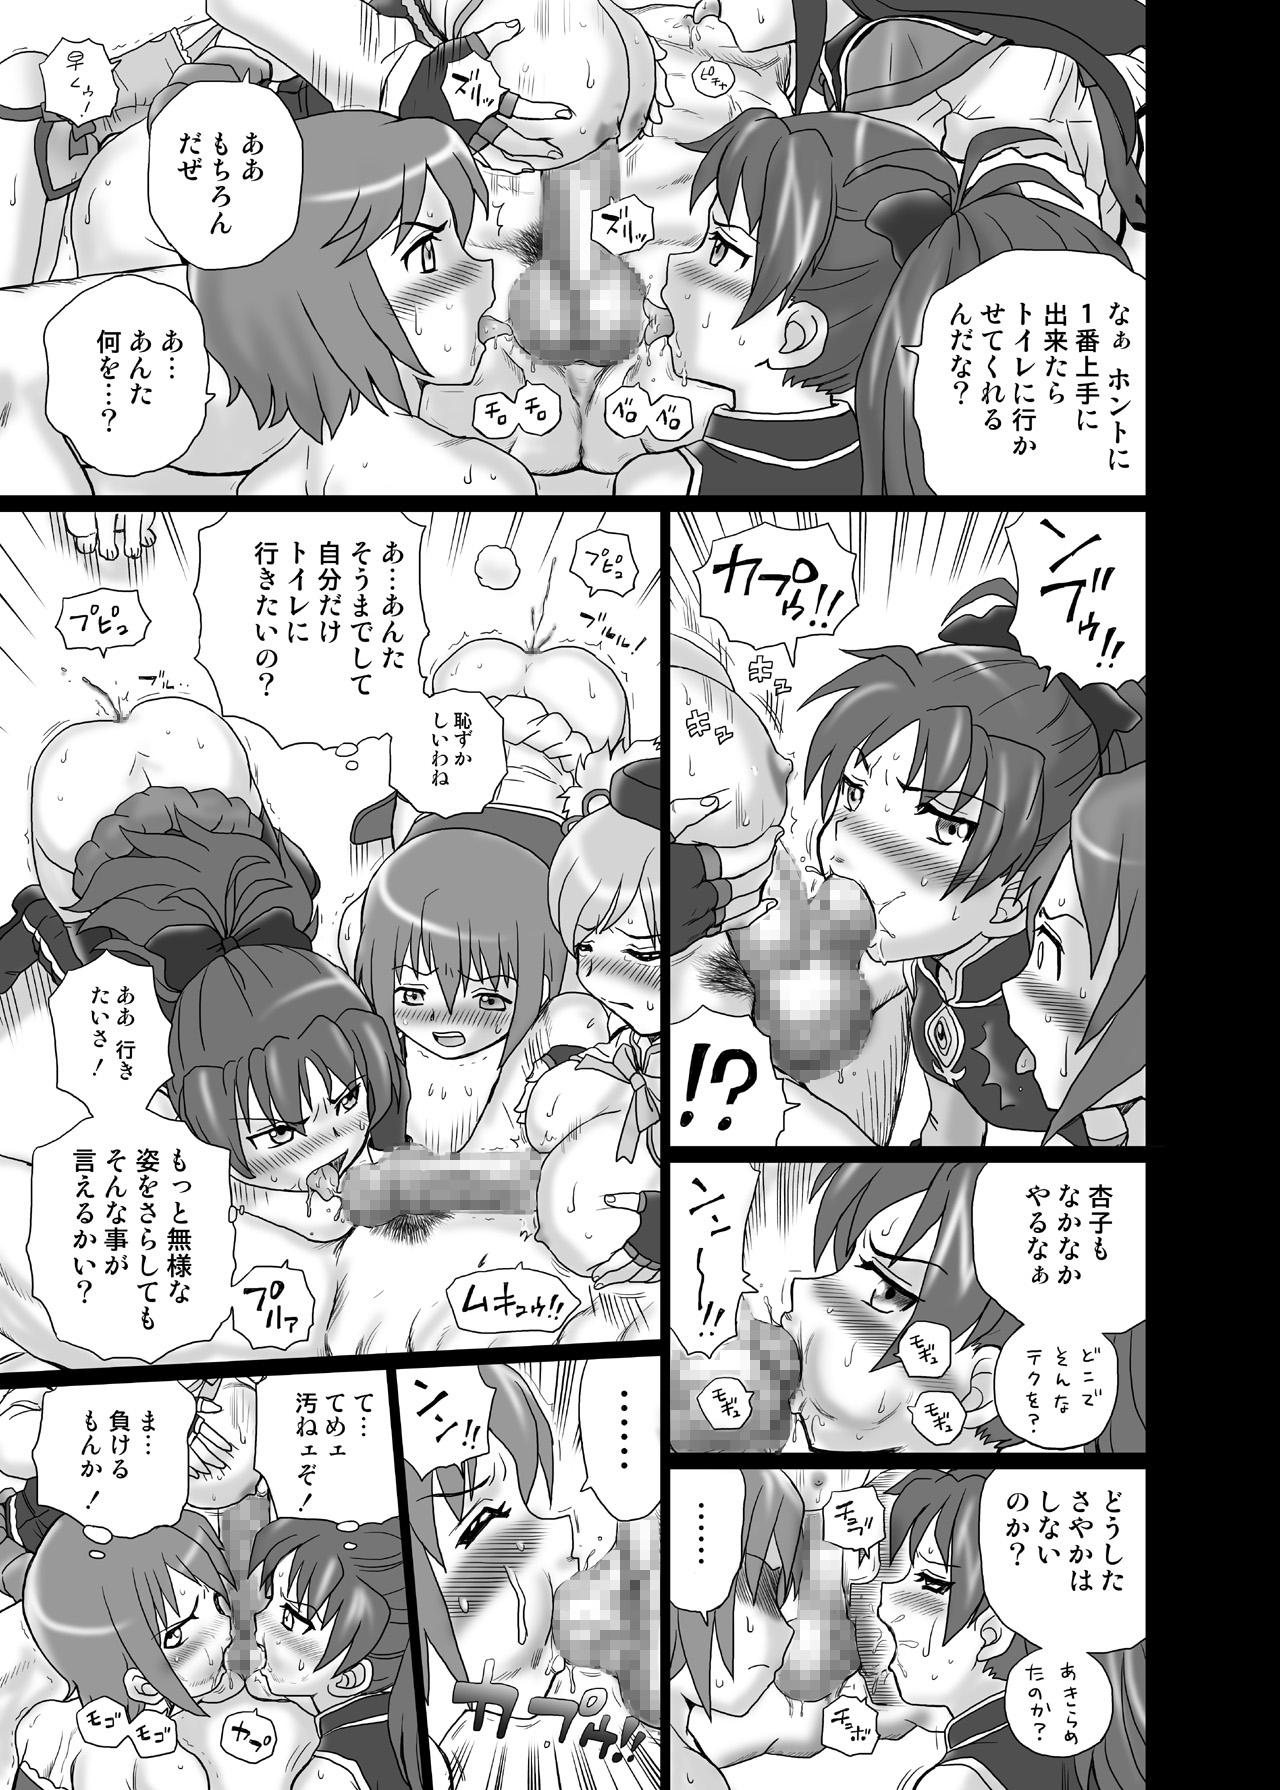 Nudity "Mado★Magi" Anal & Scatolo Sakuhinshuu - Puella magi madoka magica Step Fantasy - Page 12